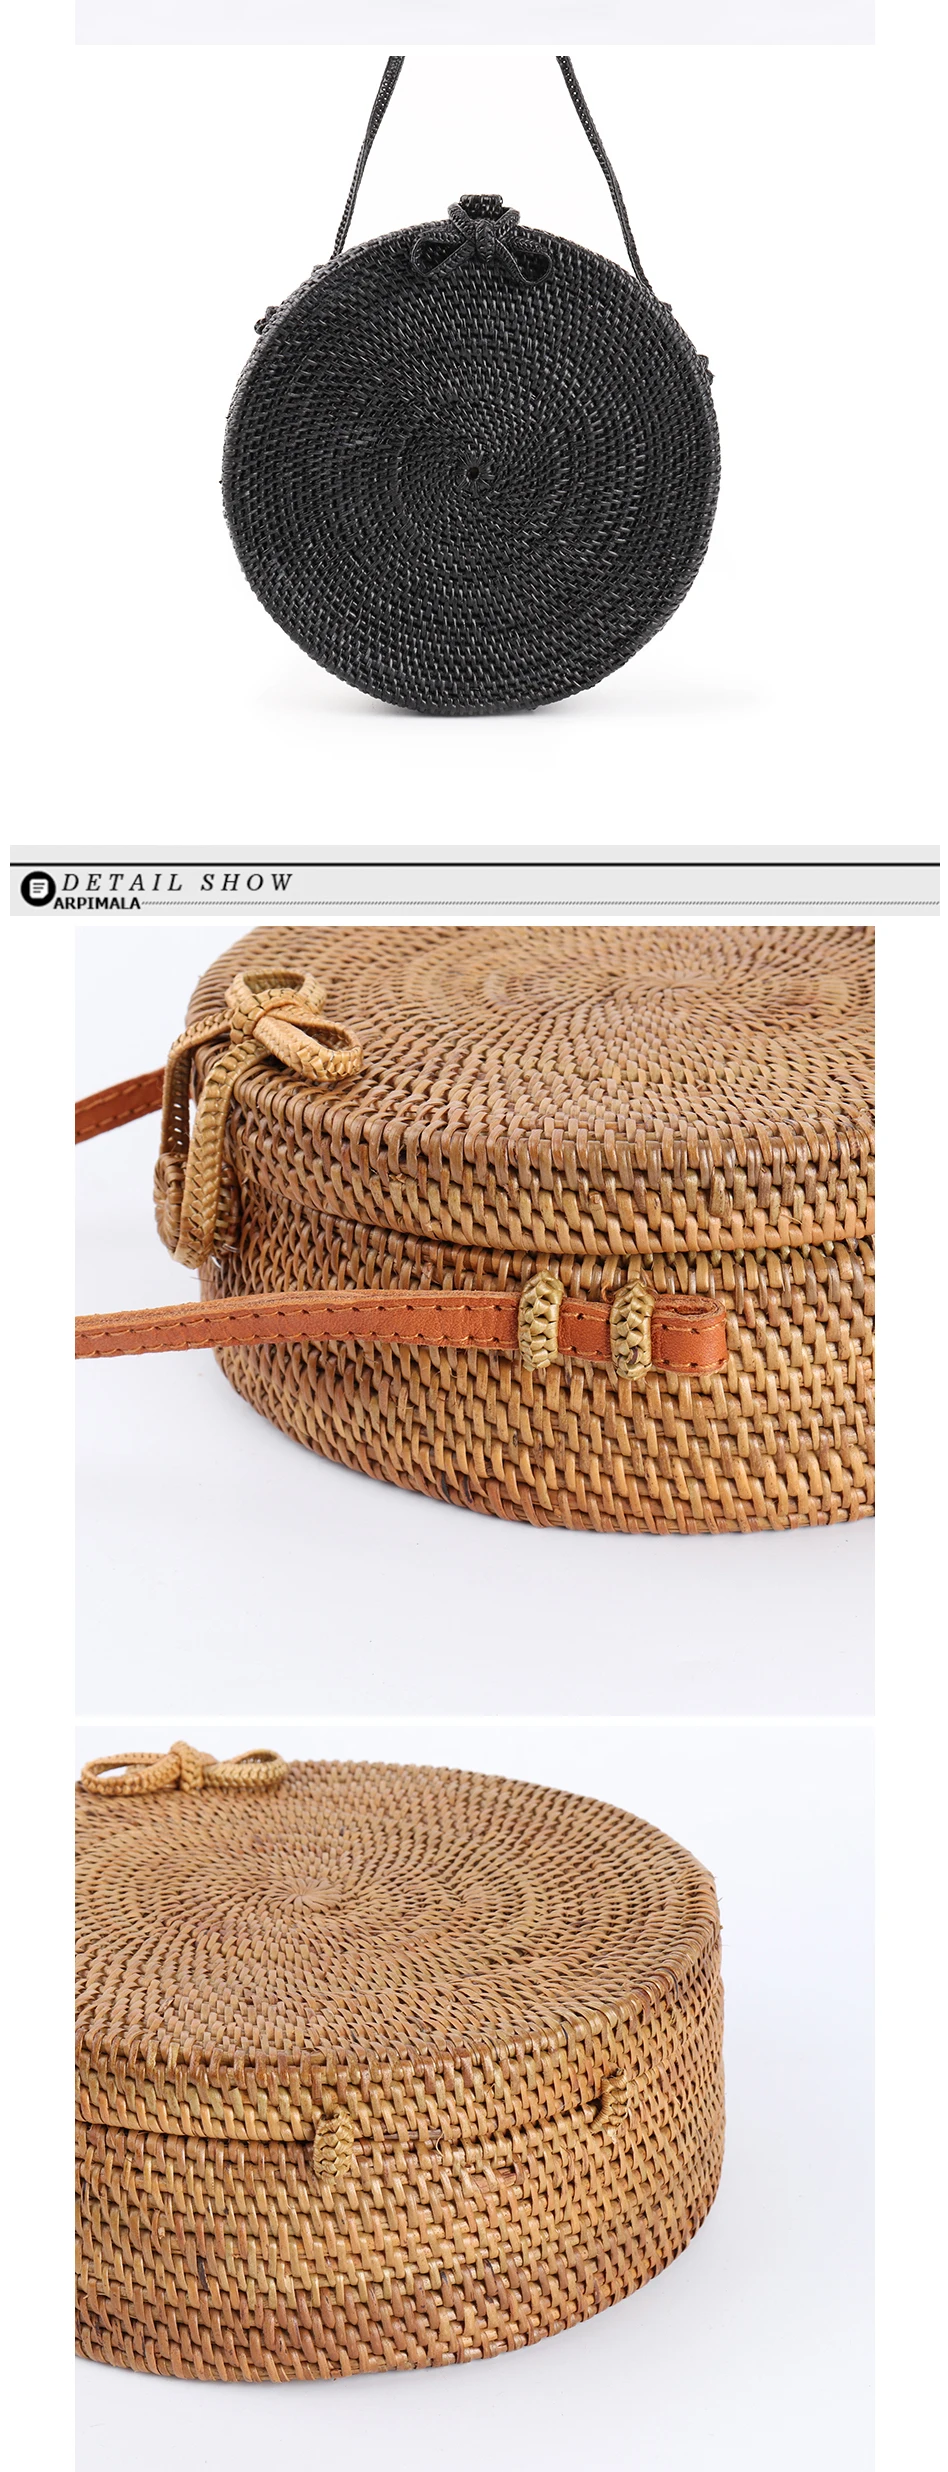 BoBoSaLa How Bali Circle Straw Bags For Women Handmade Round Beach Bag Summer Rattan Handbags Butterfly Women Messenger Bag